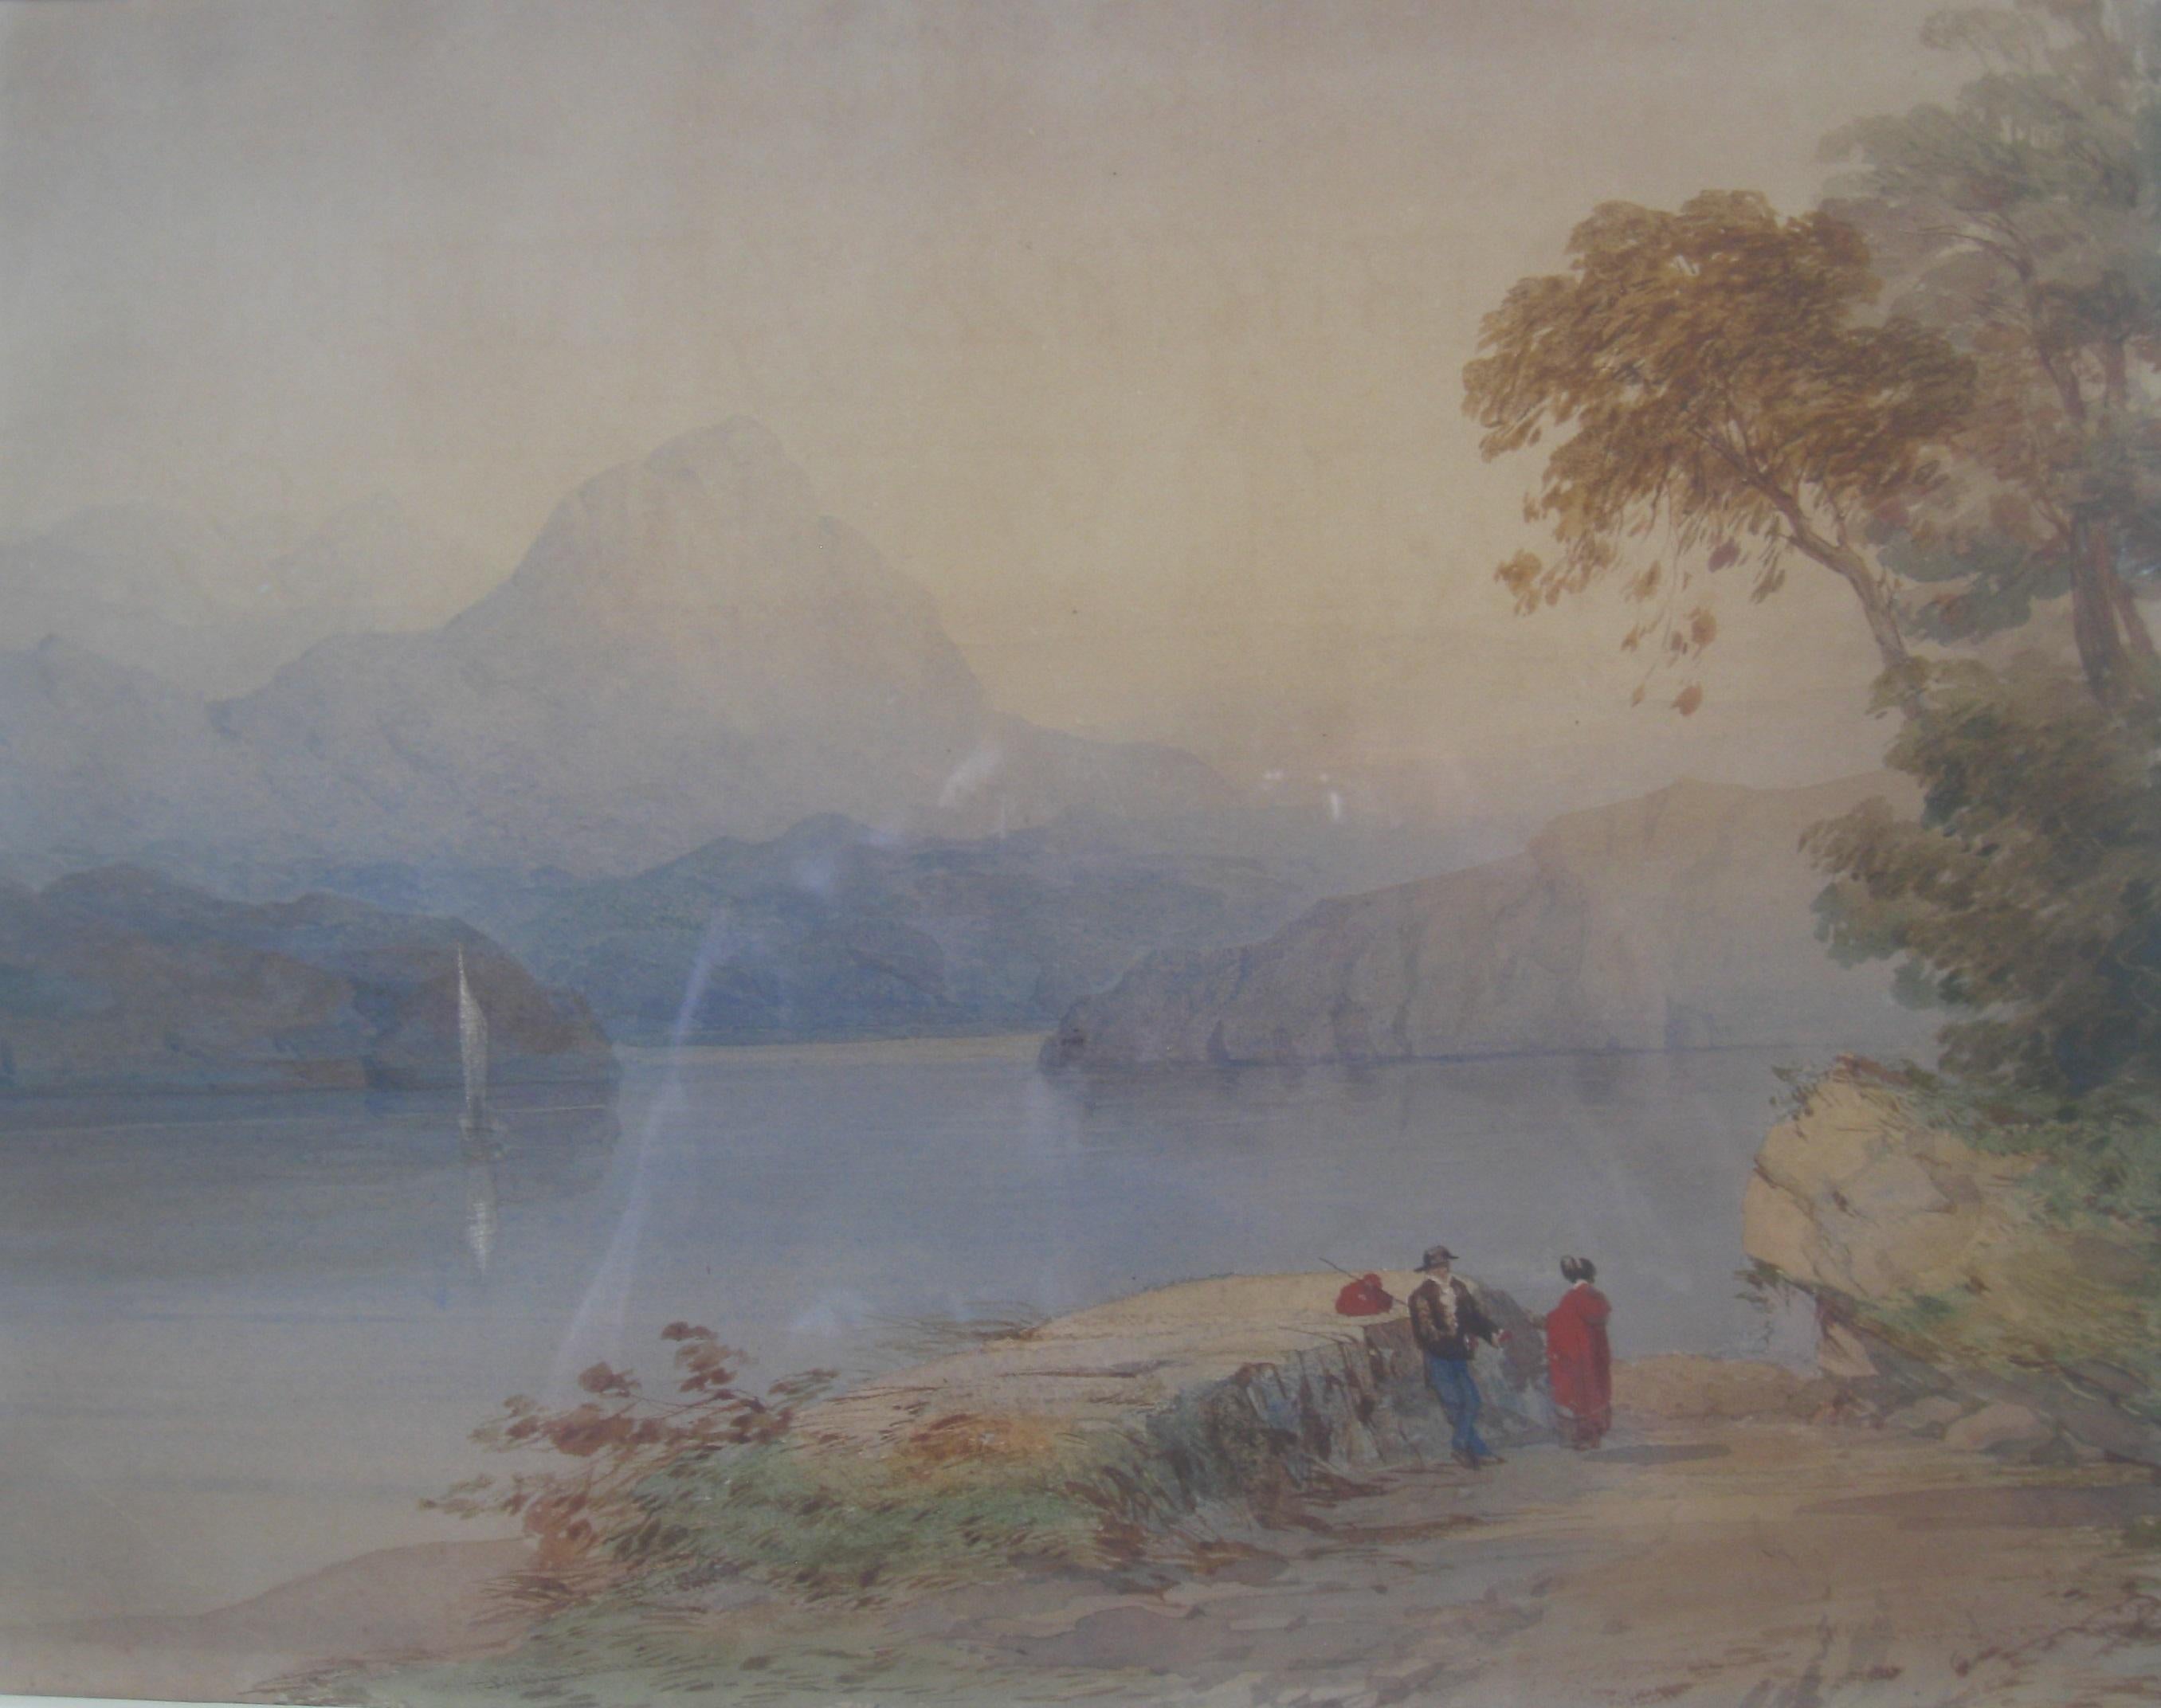 Une belle aquarelle de Thomas Miles Richardson senior, (1784-1848).  Une vue d'un lac suisse et des Alpes avec la montagne Matterhorn. L'un des meilleurs aquarellistes anglais du XIXe siècle. Ses œuvres figurent dans de nombreuses collections de